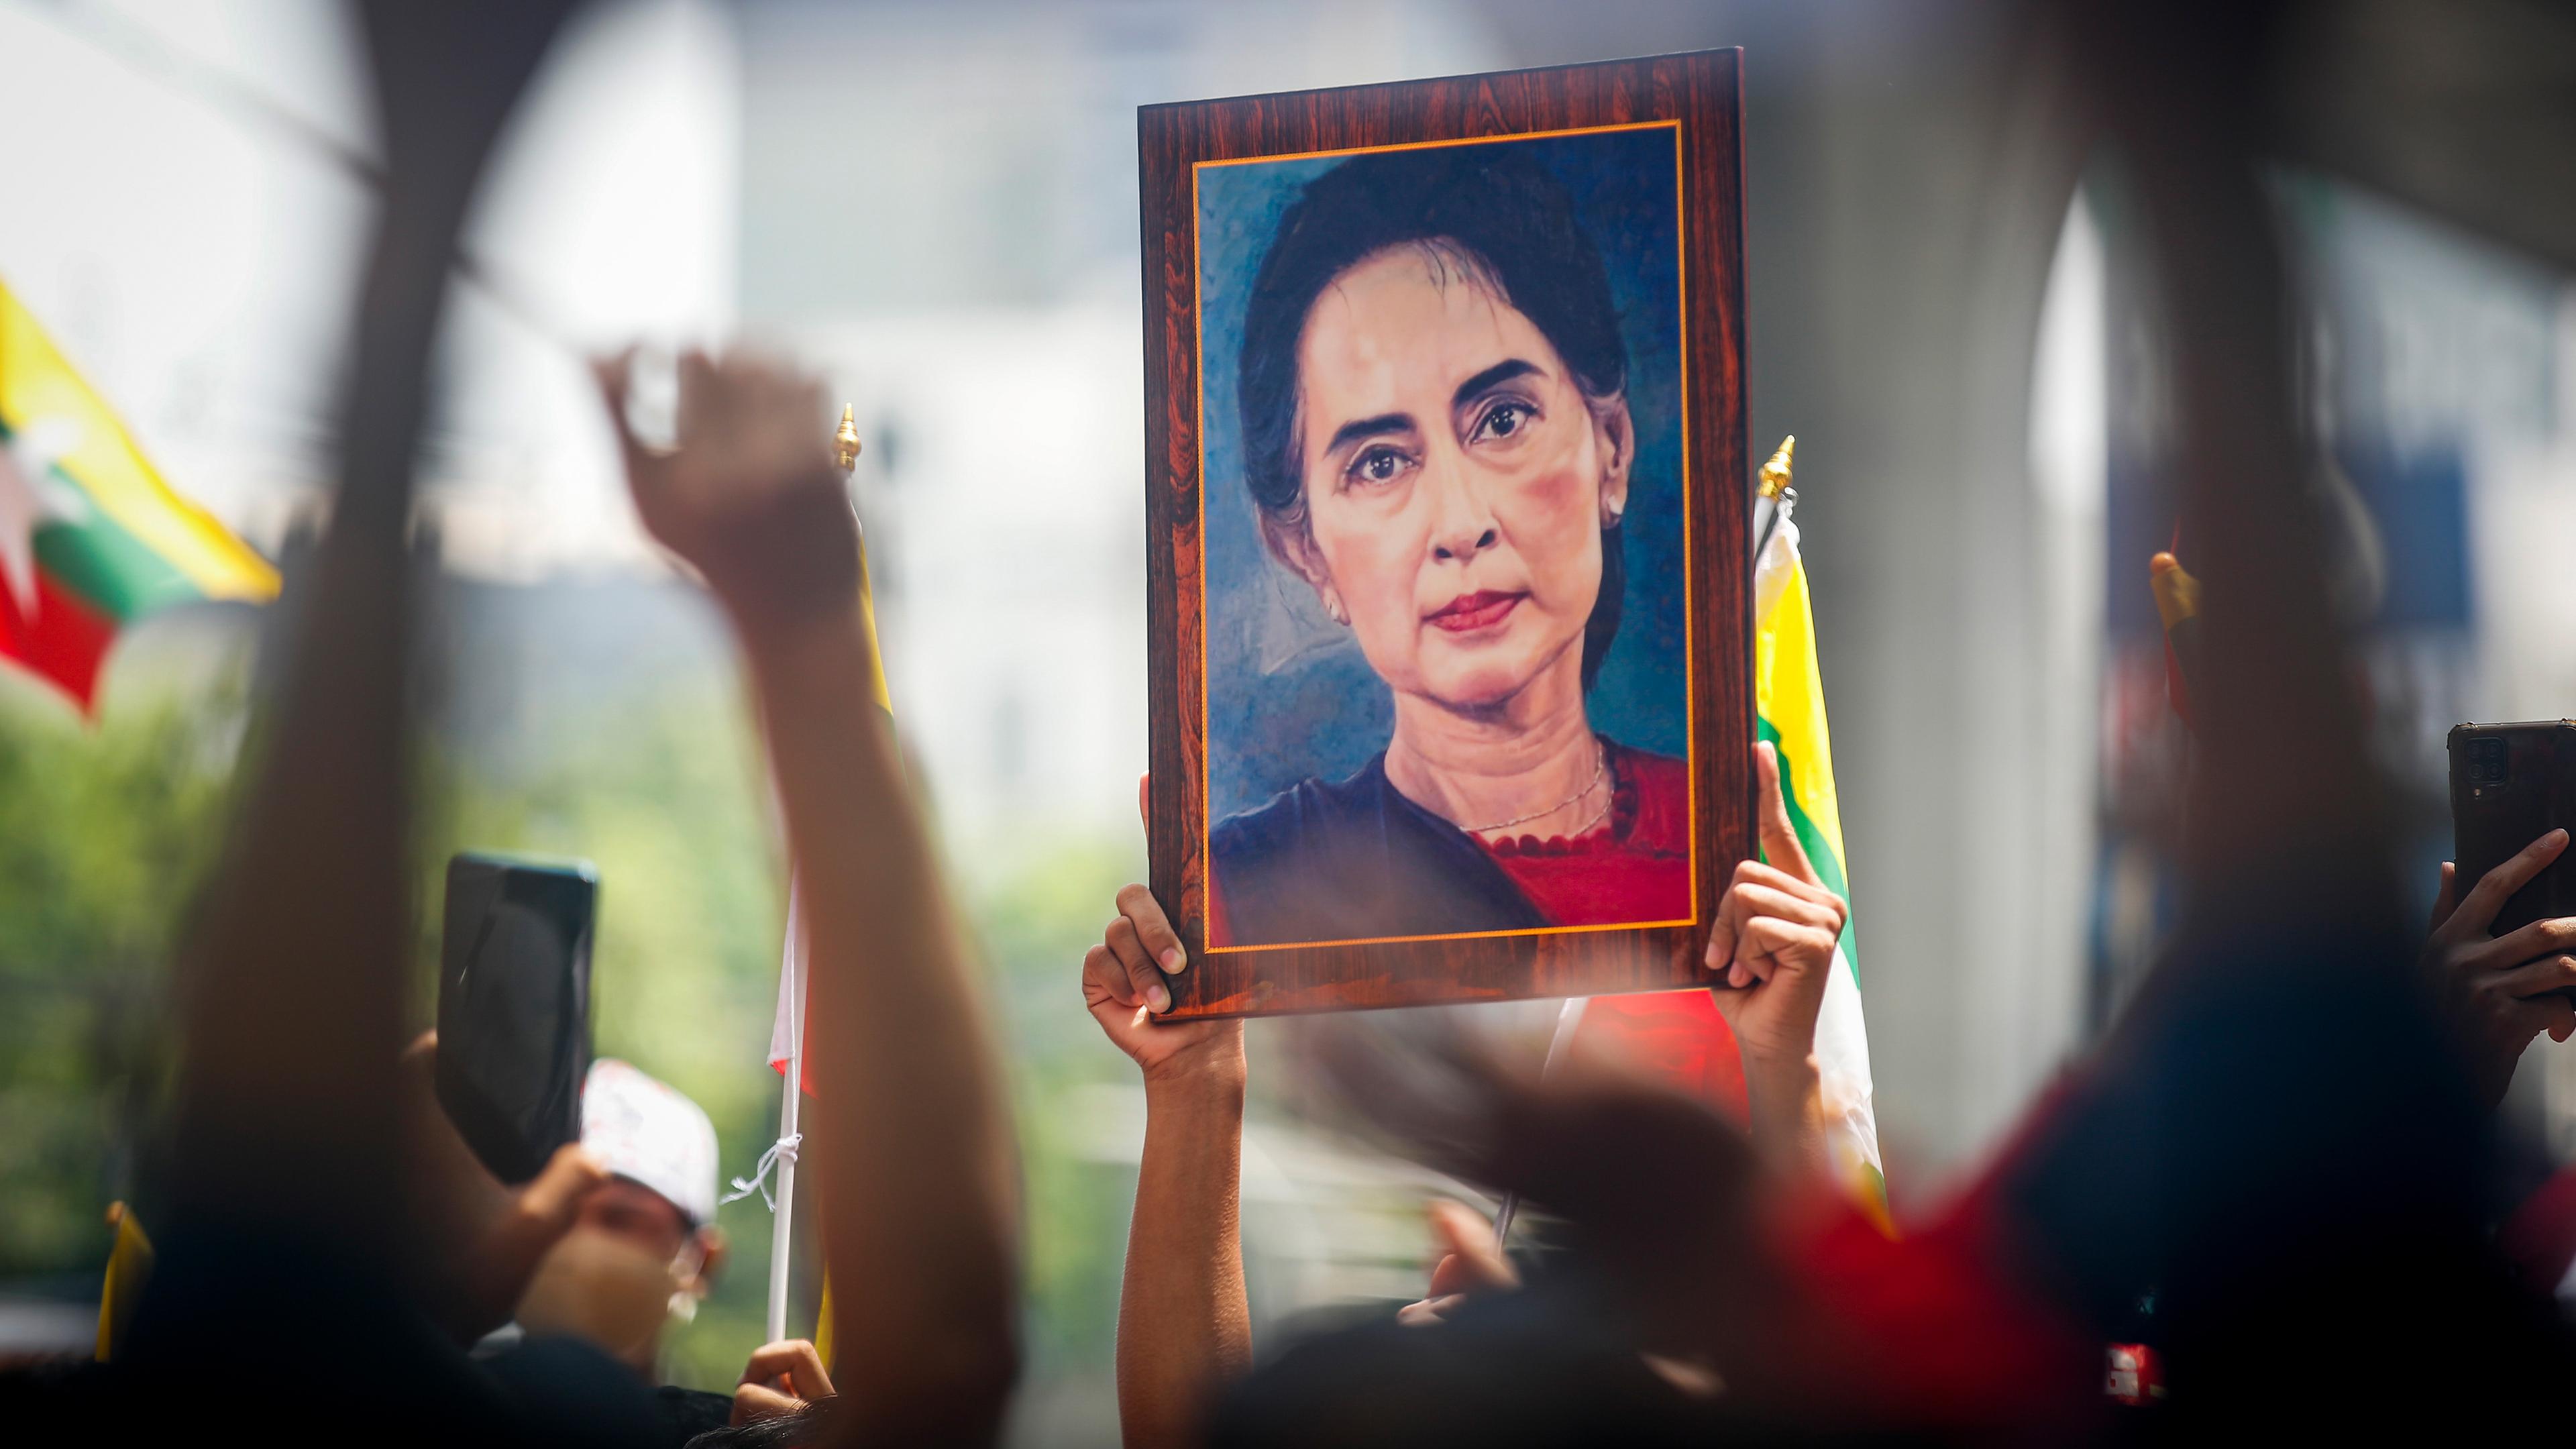 Myanmarische Staatsangehörige halten ein großes Bild von Aung San Suu Kyi während einer Kundgebung hoch, aufgenommen am 26.07.2022 in Bangkok